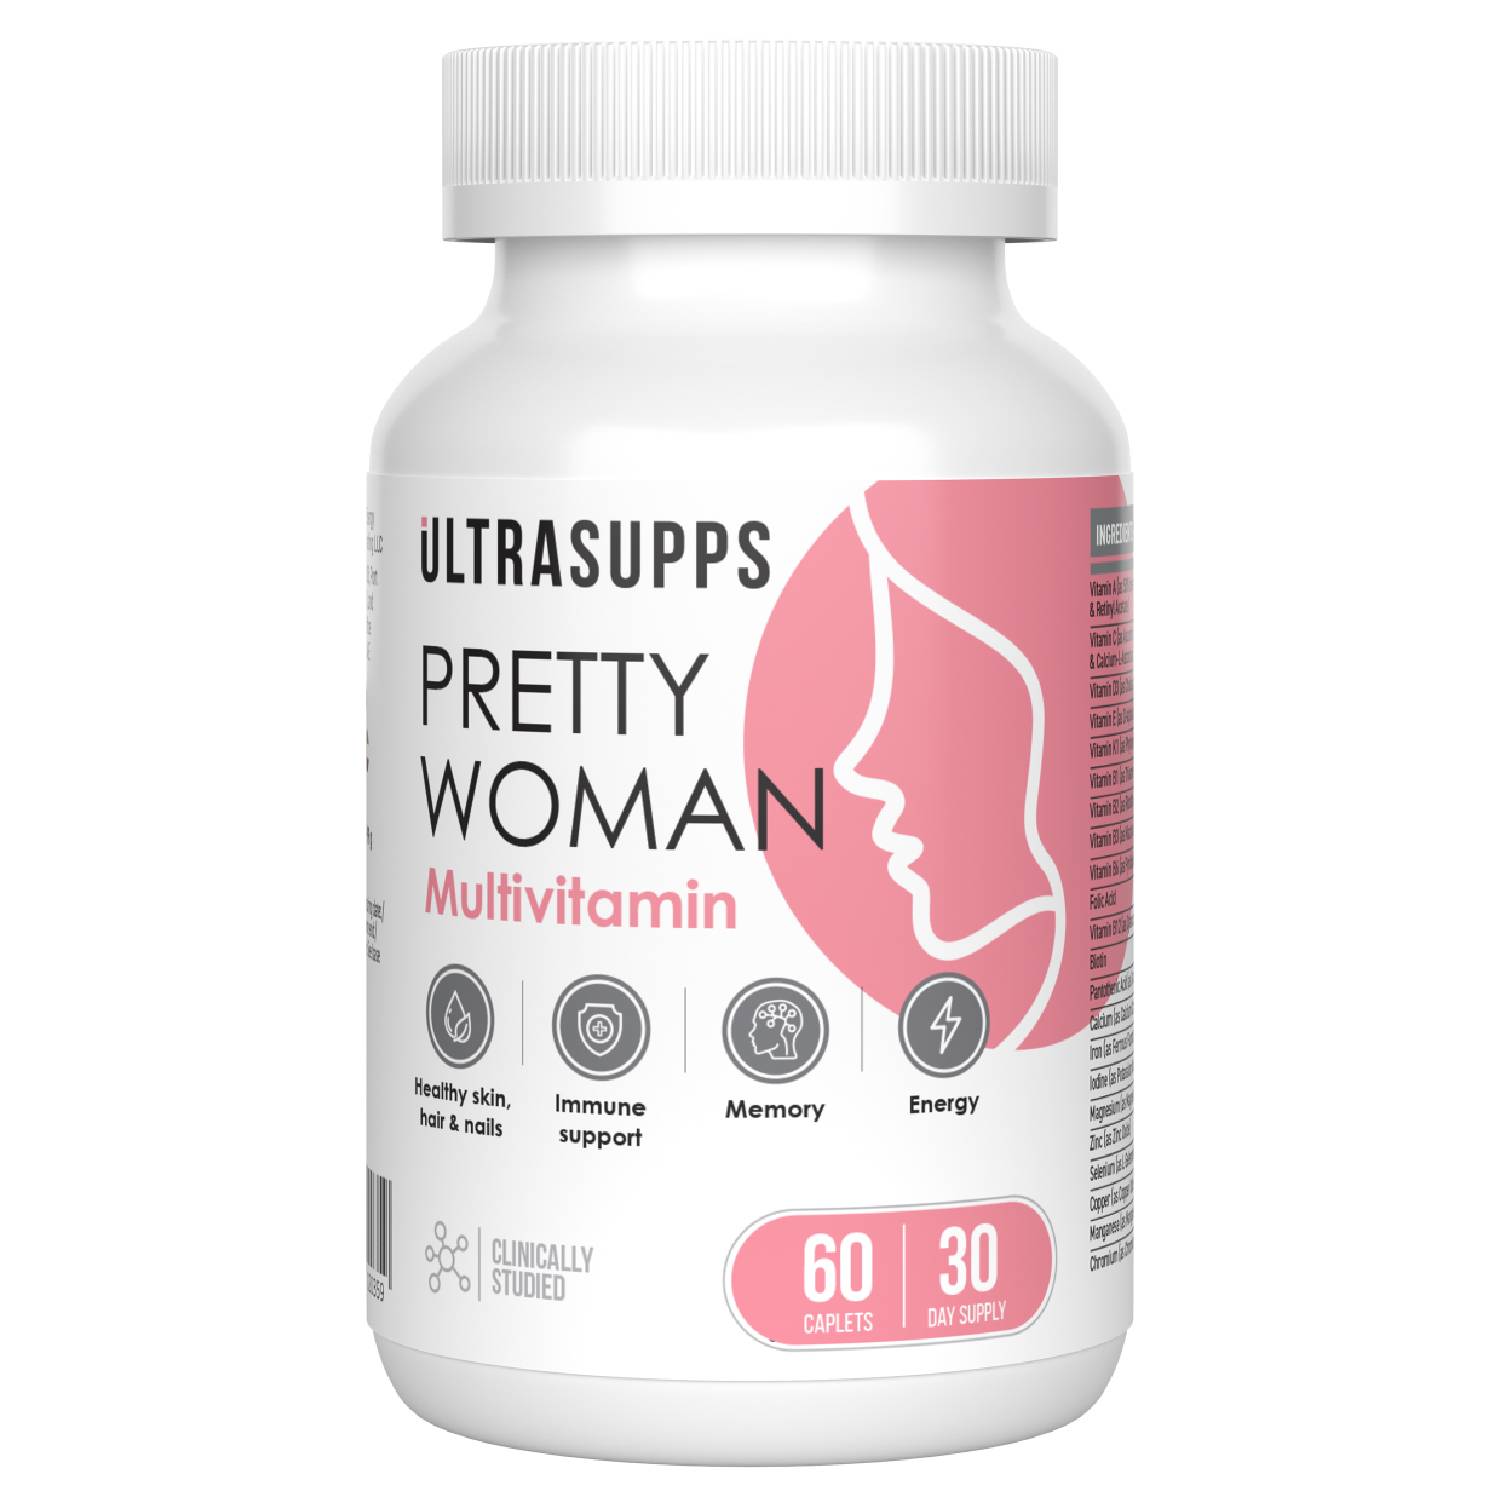 Ultrasupps Витаминно-минеральный комплекс для женщин Pretty Woman Multivitamin, 60 каплет (Ultrasupps, ) комплекс витаминов и минералов для укрепления иммунитета plantago multivitamin